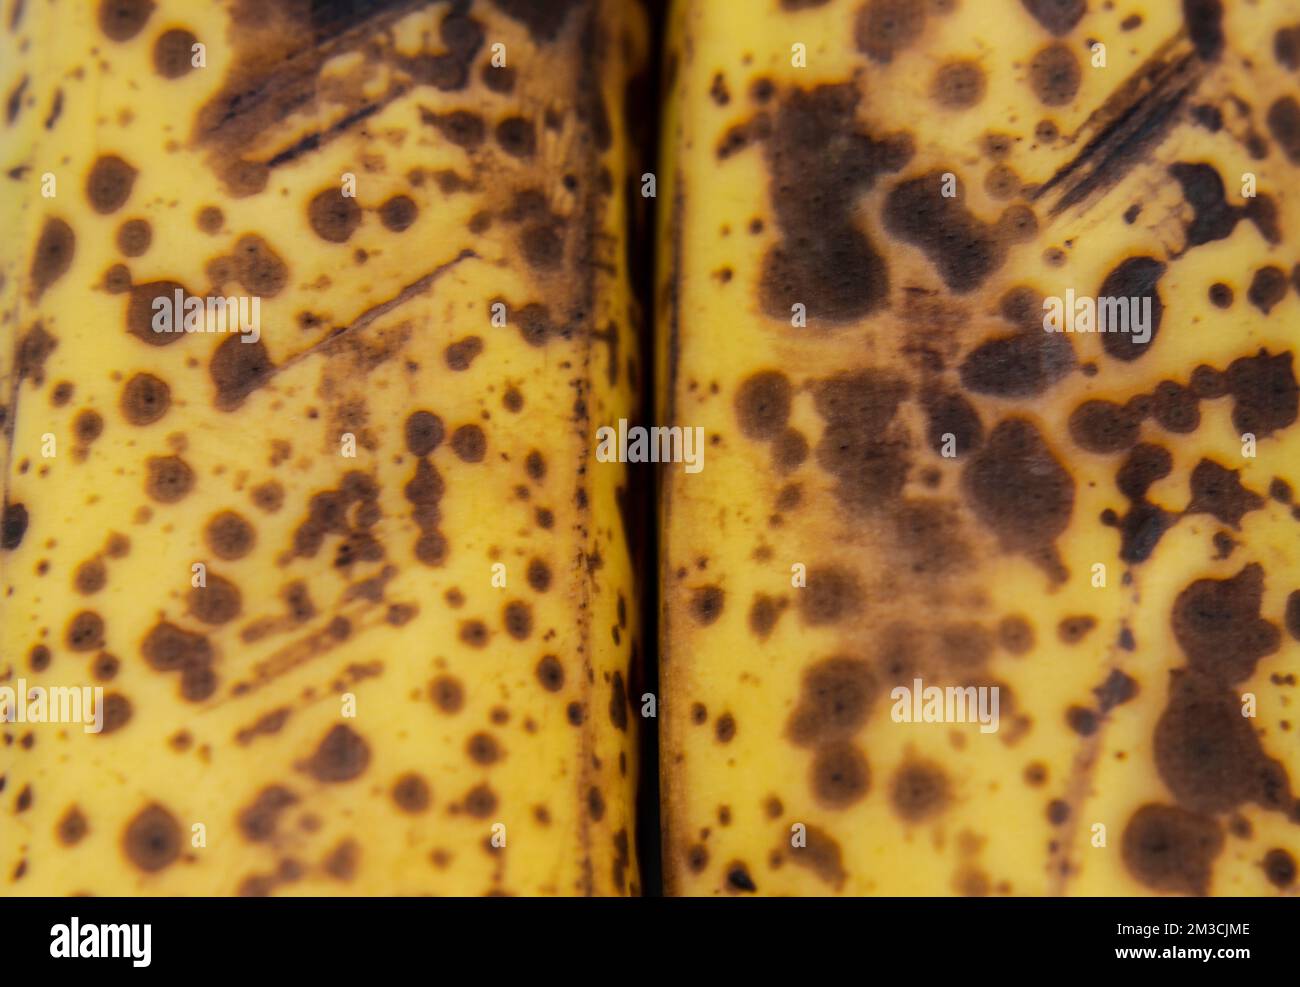 Makrofotografie zu einer frischen, gelben Sommersprossen-Bananenstruktur. Obst- und Texturkonzept Stockfoto